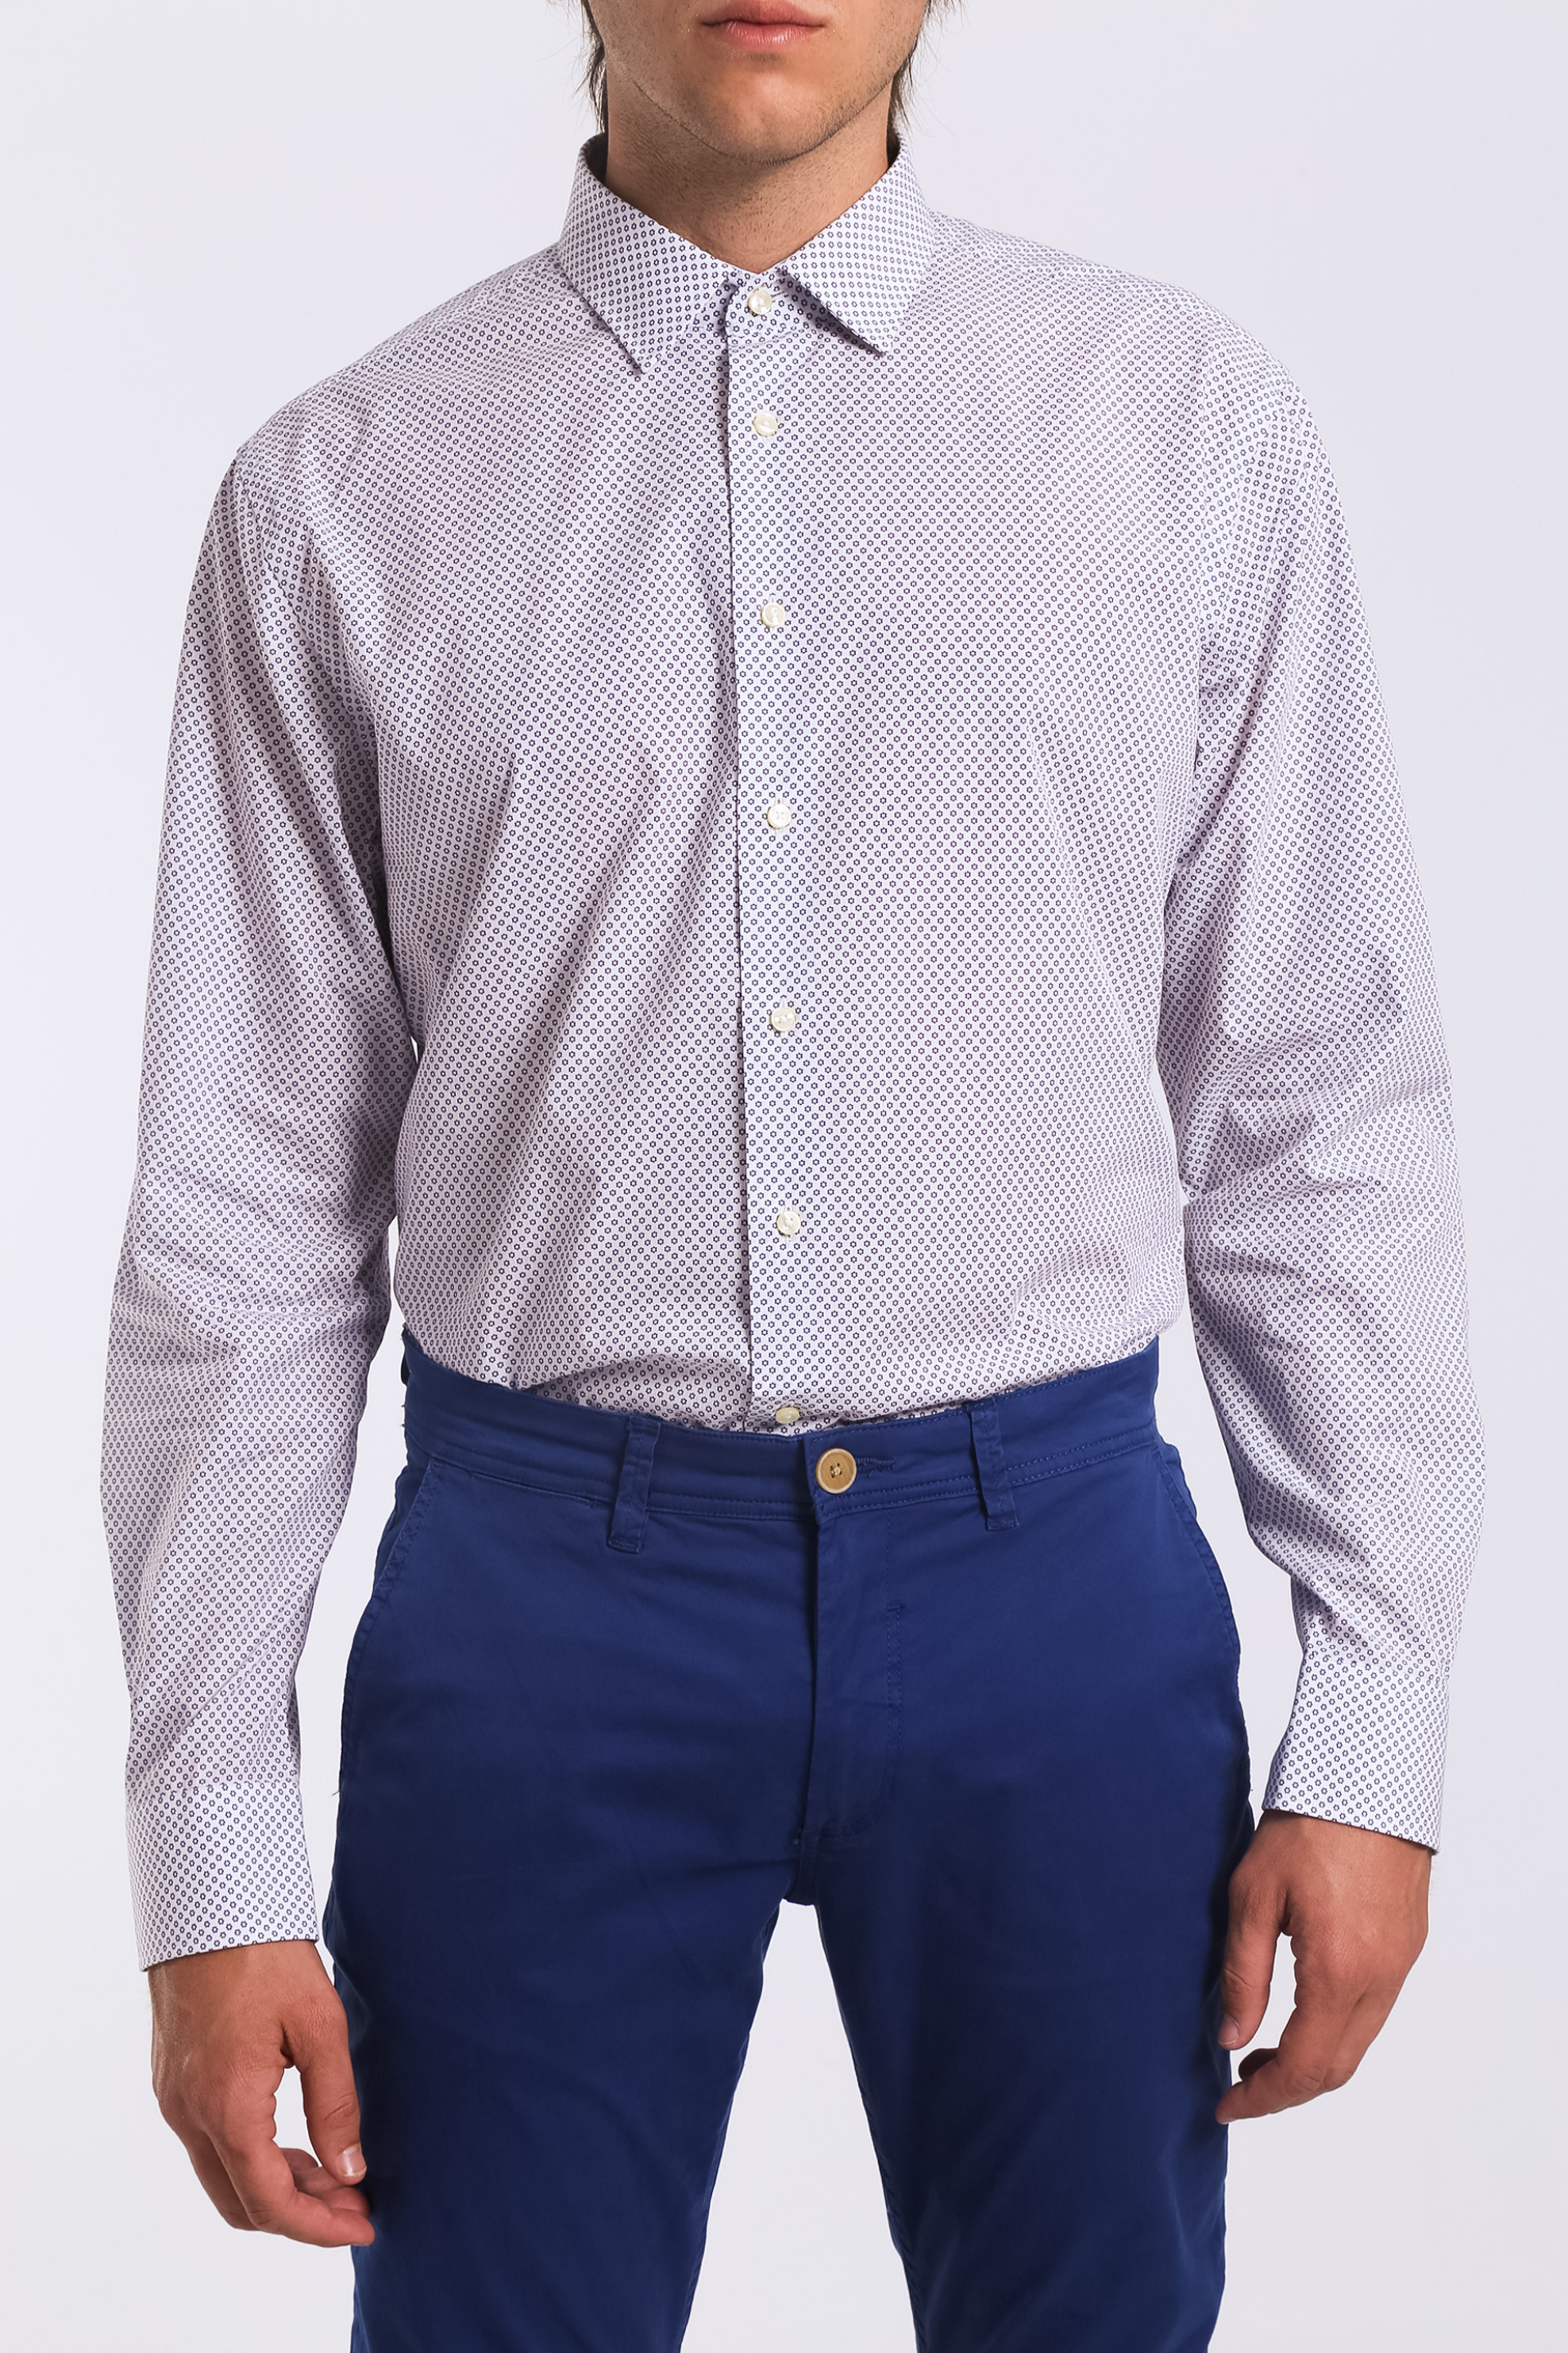 Άνδρας > ΡΟΥΧΑ > Πουκάμισα > Casual Ανδρικό πουκάμισο μονόχρωμο με μικροσχέδιο Arrow - 47-090251 Λευκό